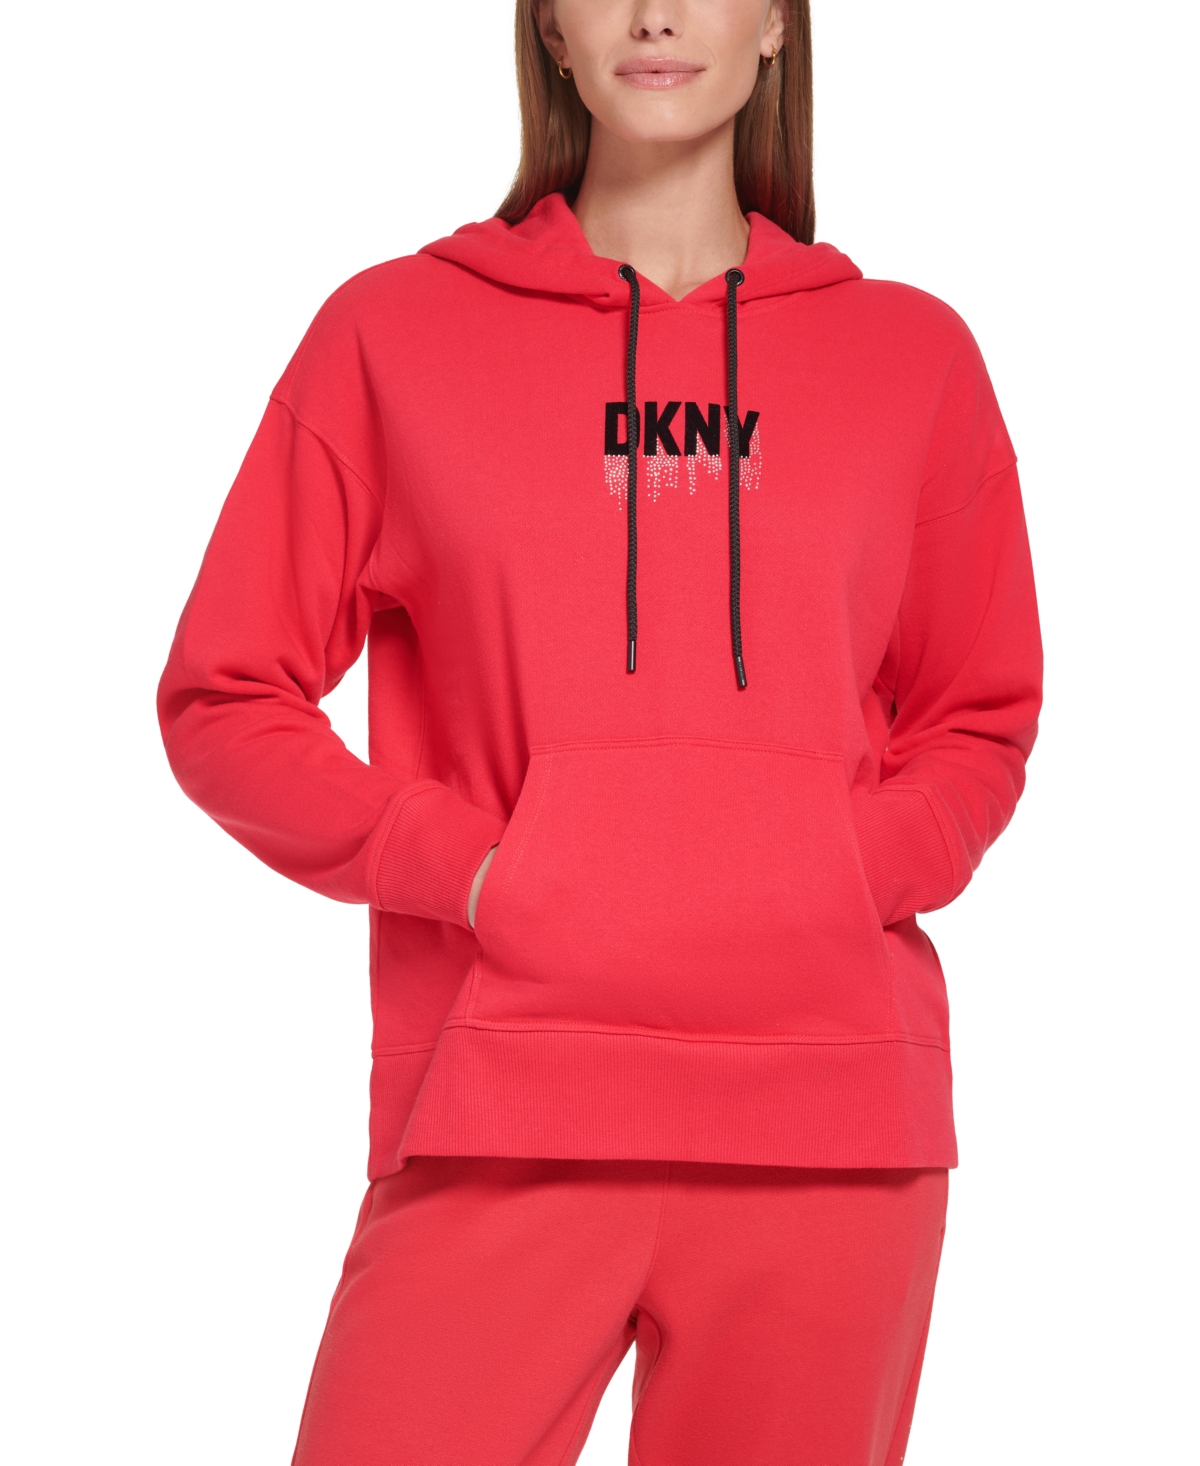  Dkny Sport Women's Rhinestone Logo Hooded Sweatshirt